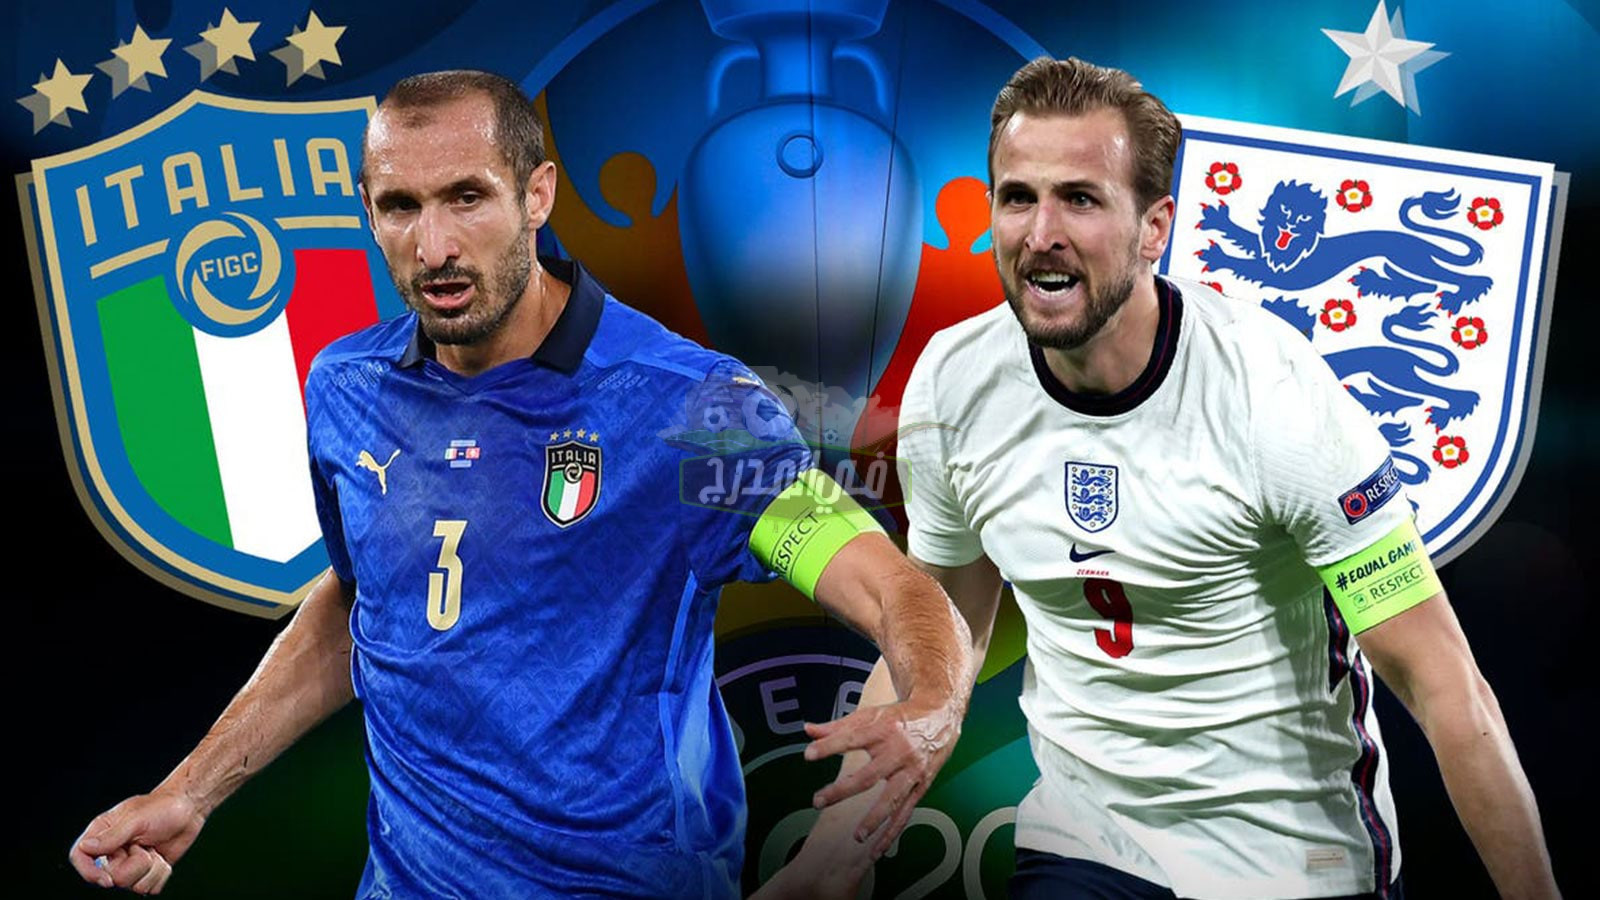 التشكيل المتوقع لمباراة إيطاليا ضد إنجلترا Italy vs England في نهائي يورو 2020